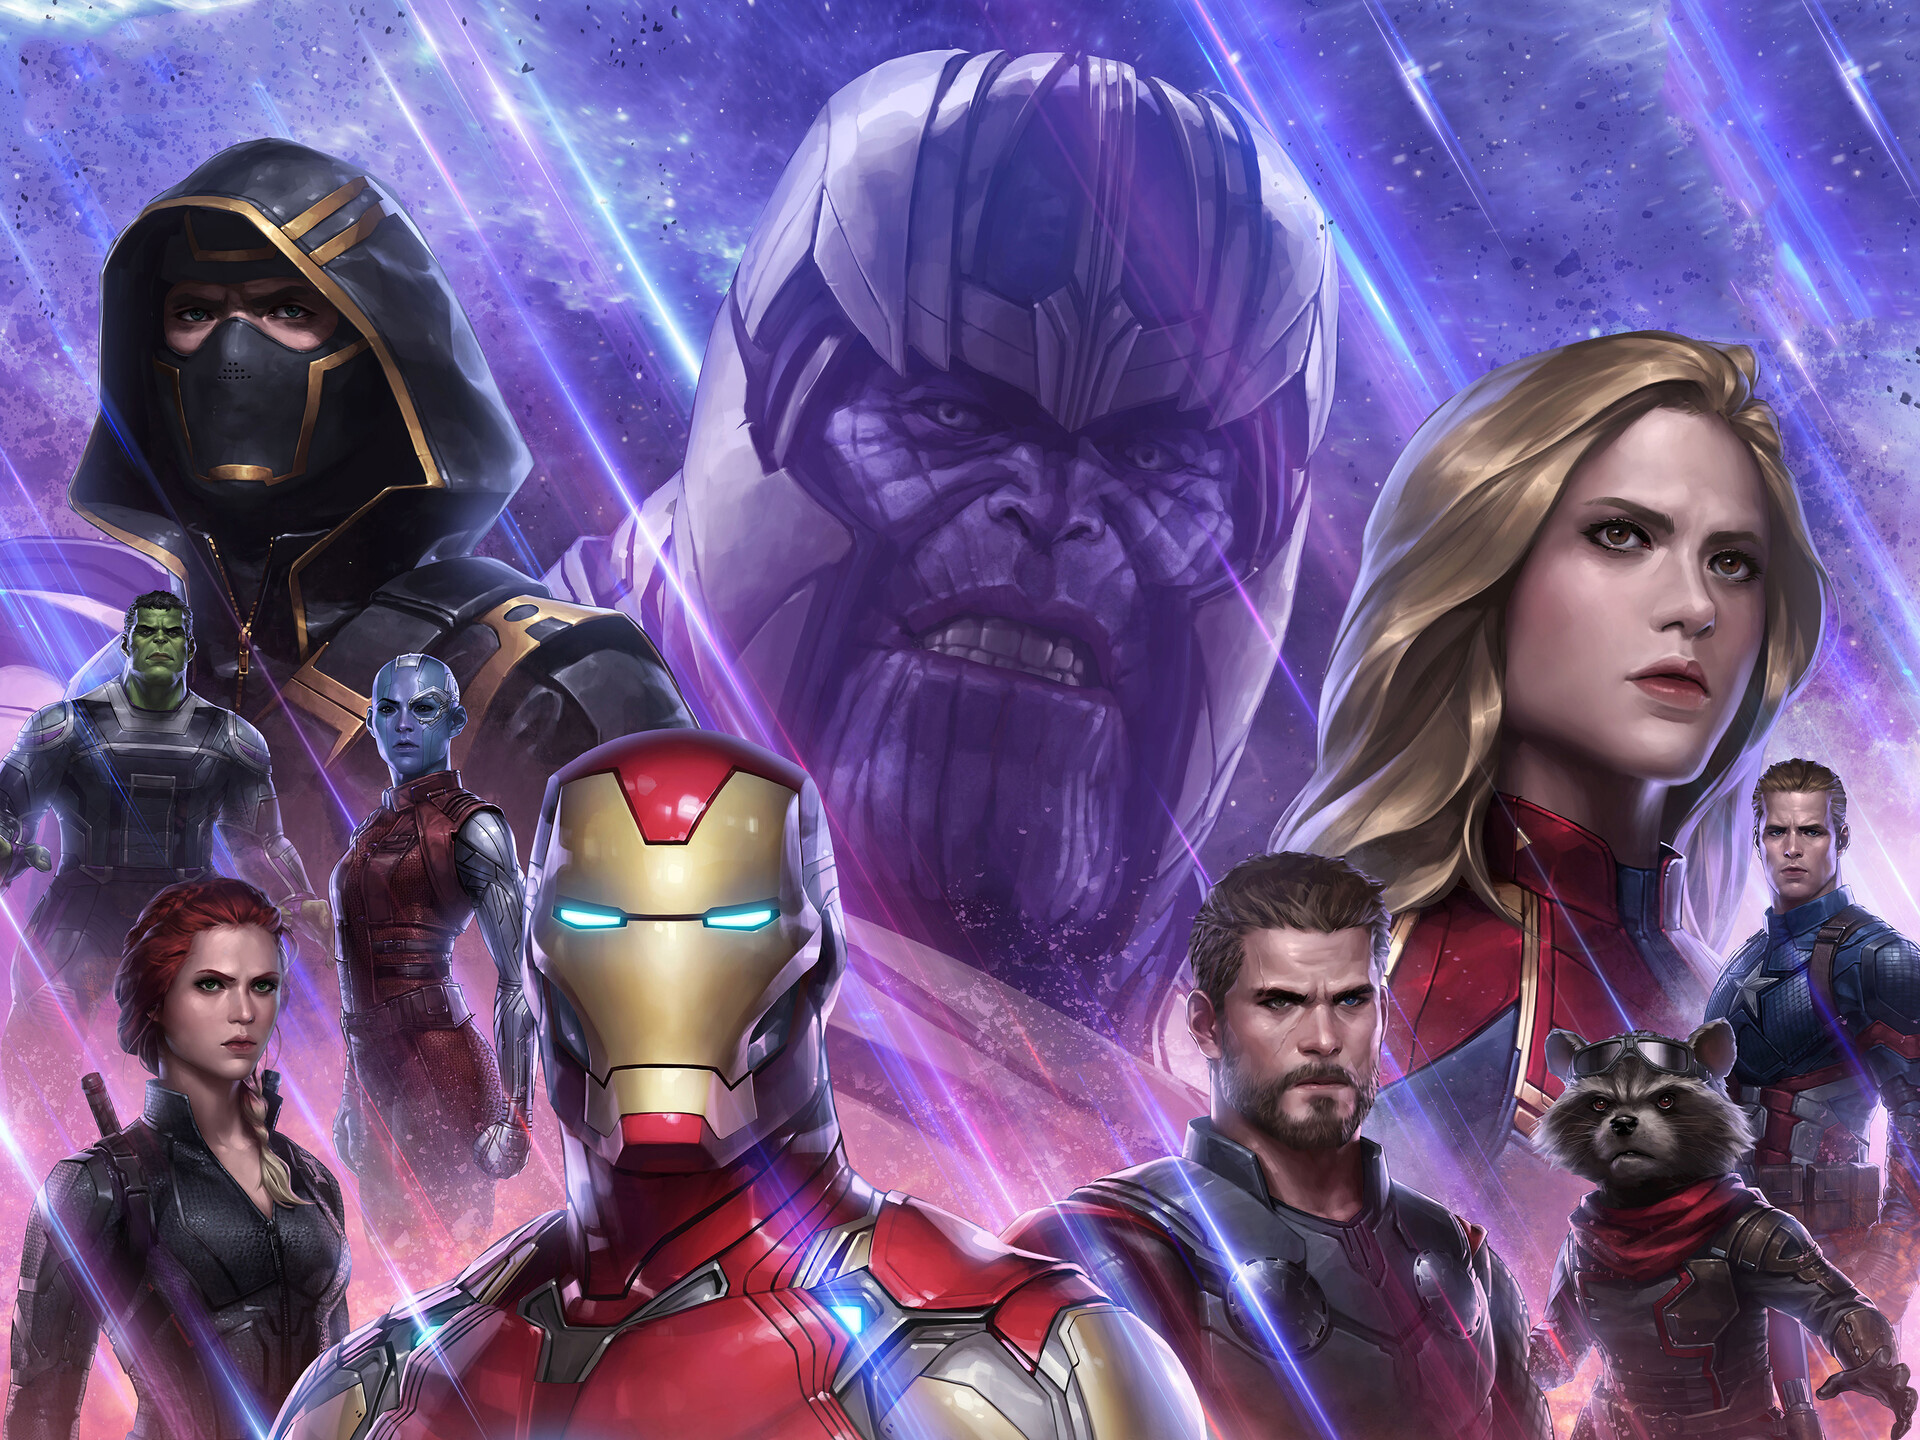 Wallpapers games Avengers Endgame Marvel Future Fight on the desktop